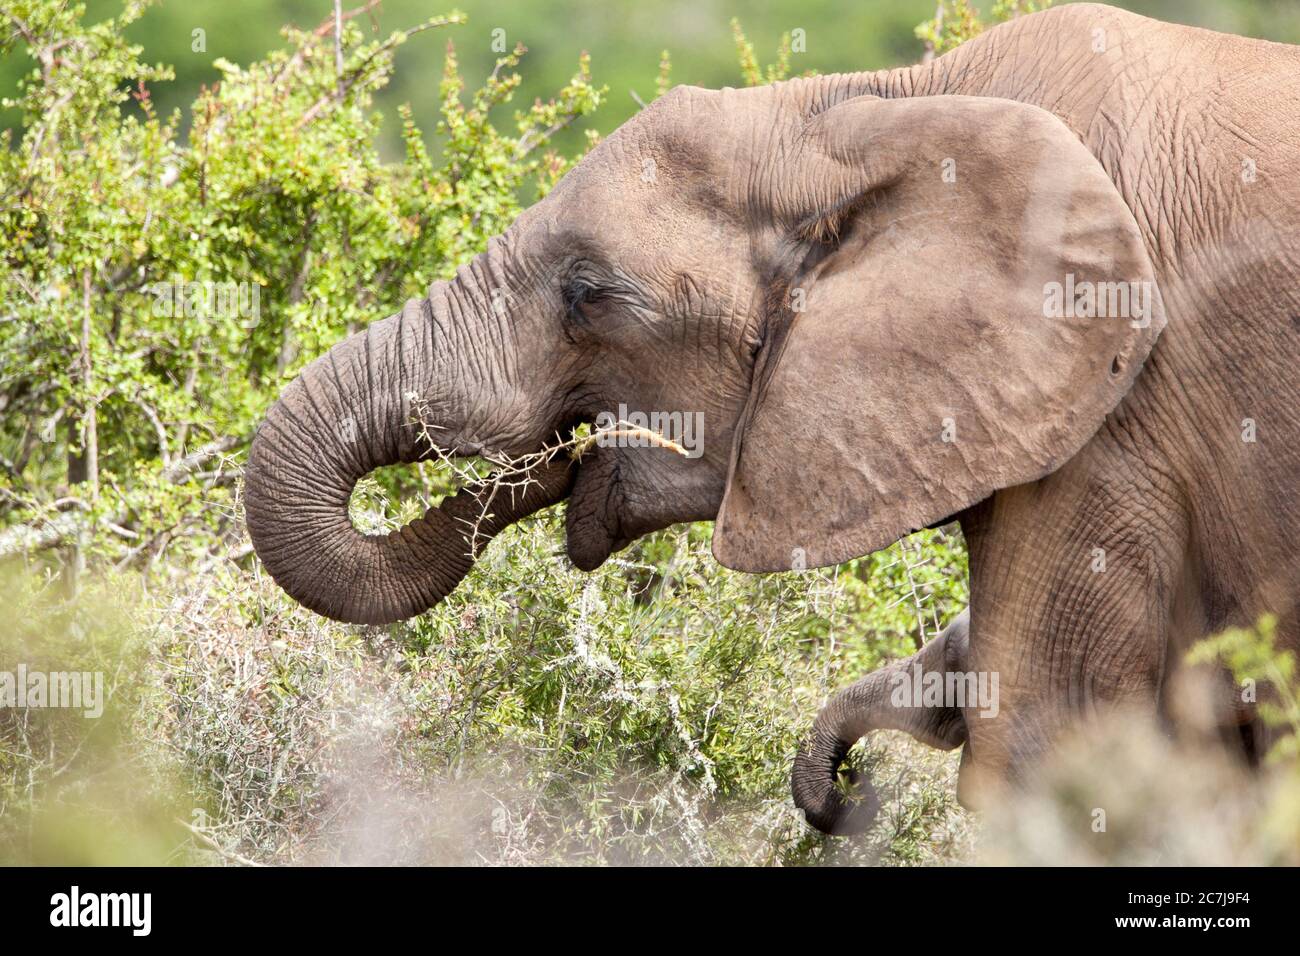 Madre y ternero (elefante africano, Loxodonta africana) elefantes pastando en un arbusto de espinas. Foto de stock